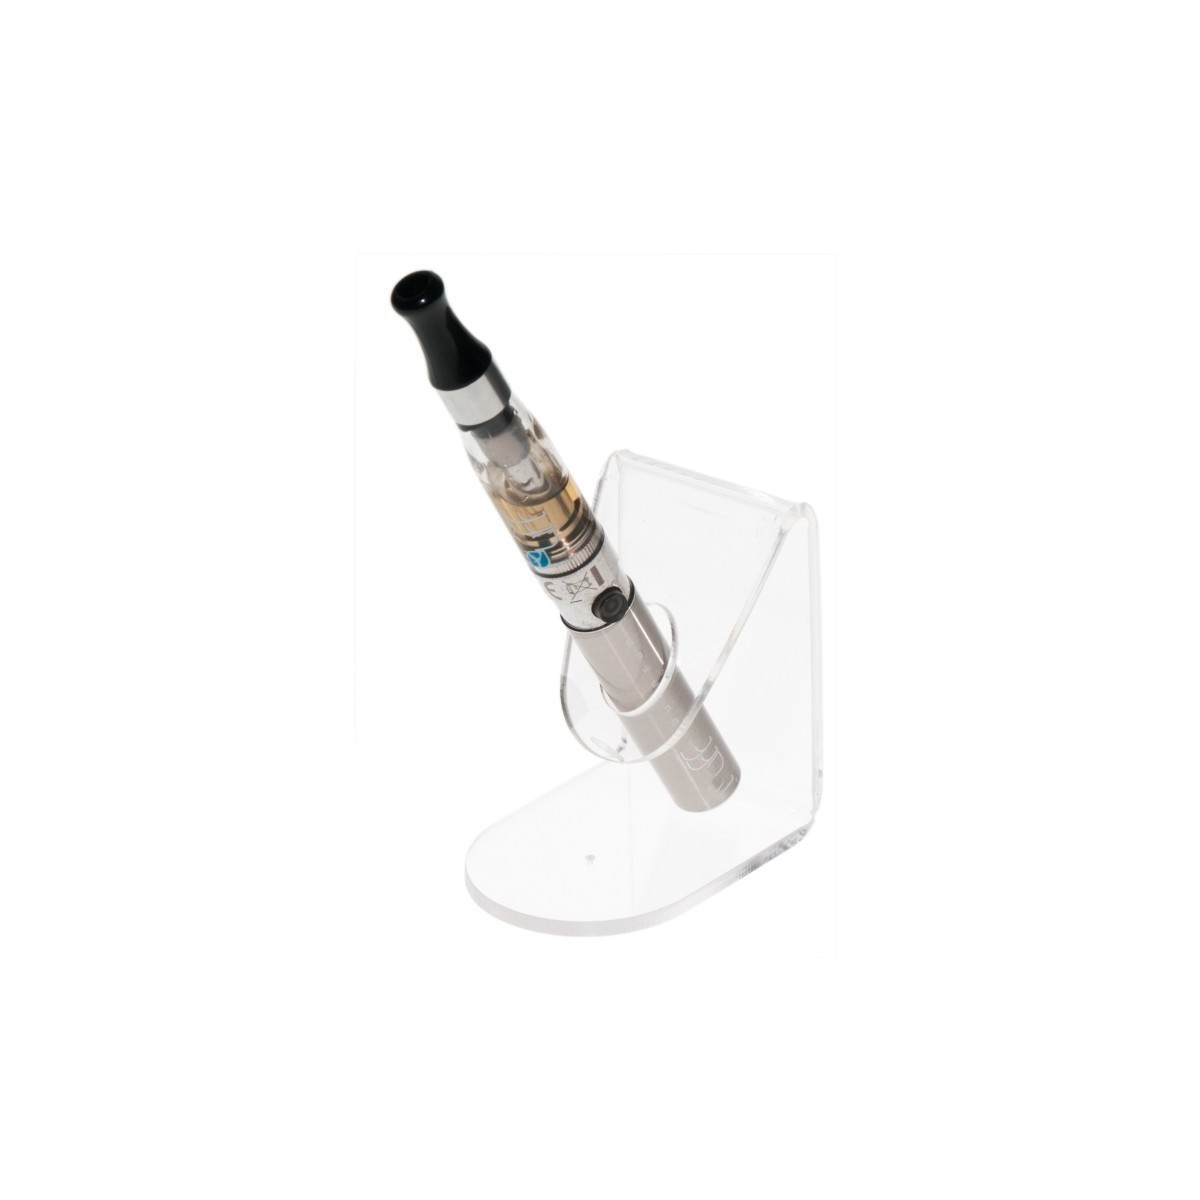 E-093 PSE-B - Porta sigaretta elettronica da banco in plexiglass trasparente - Misura: 5 x 6.5 x H7 cm